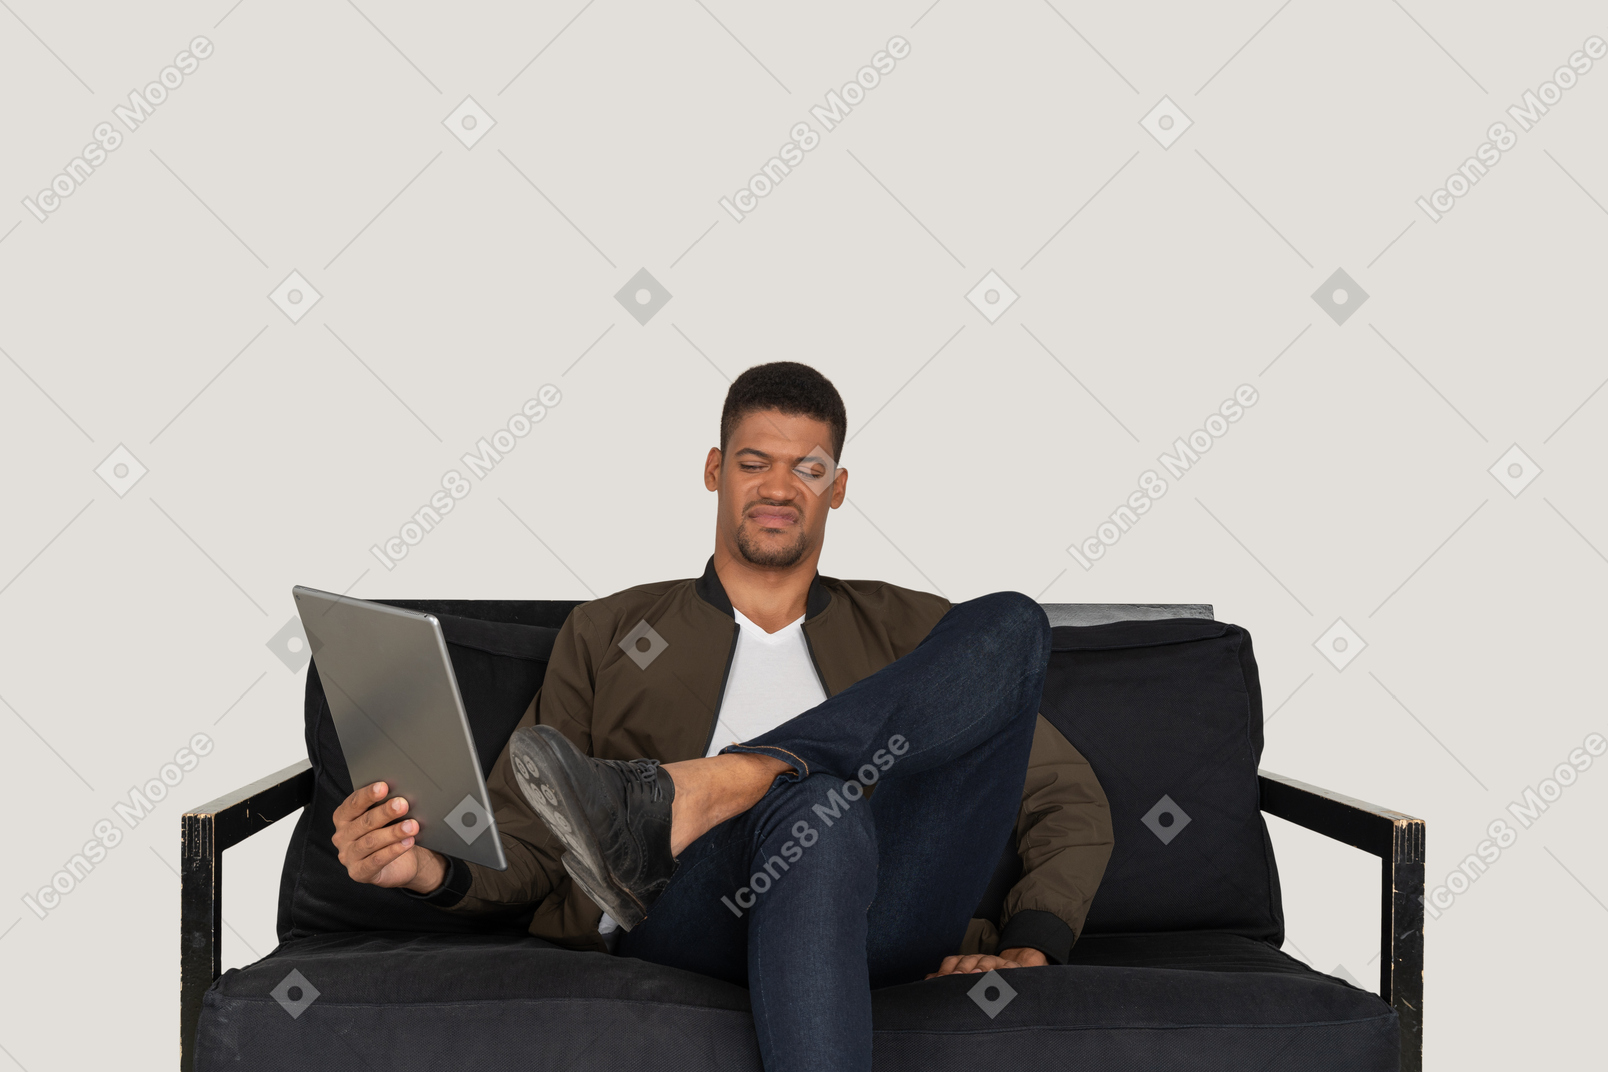 Vista frontal de um jovem sorridente sentado em um sofá